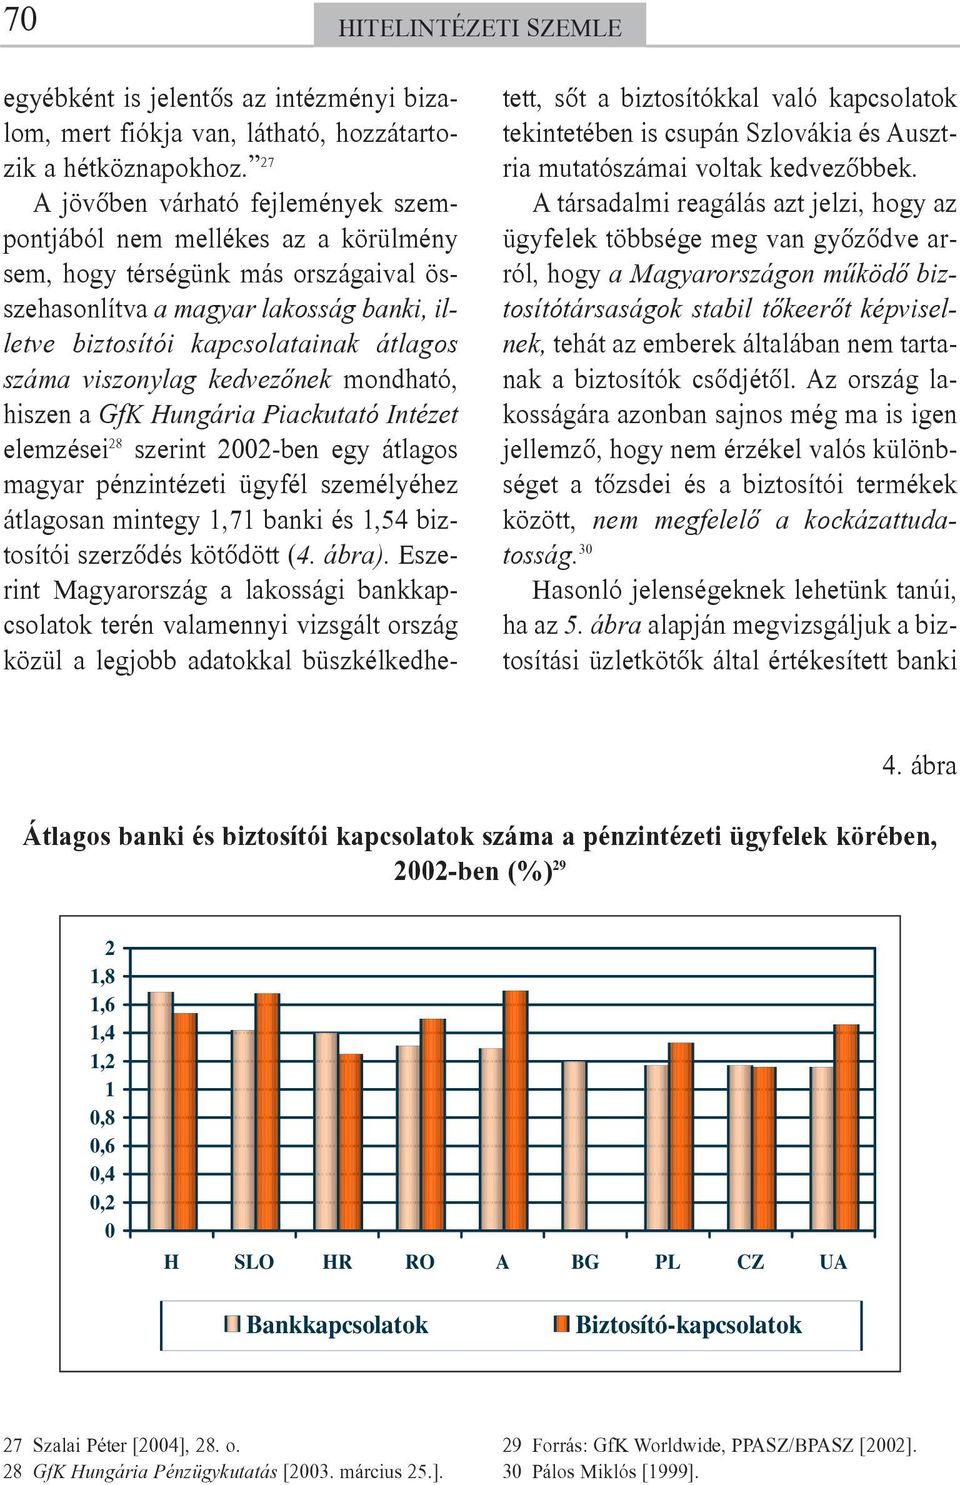 viszonylag kedvezõnek mondható, hiszen a GfK Hungária Piackutató Intézet elemzései 28 szerint 2002-ben egy átlagos magyar pénzintézeti ügyfél személyéhez átlagosan mintegy 1,71 banki és 1,54